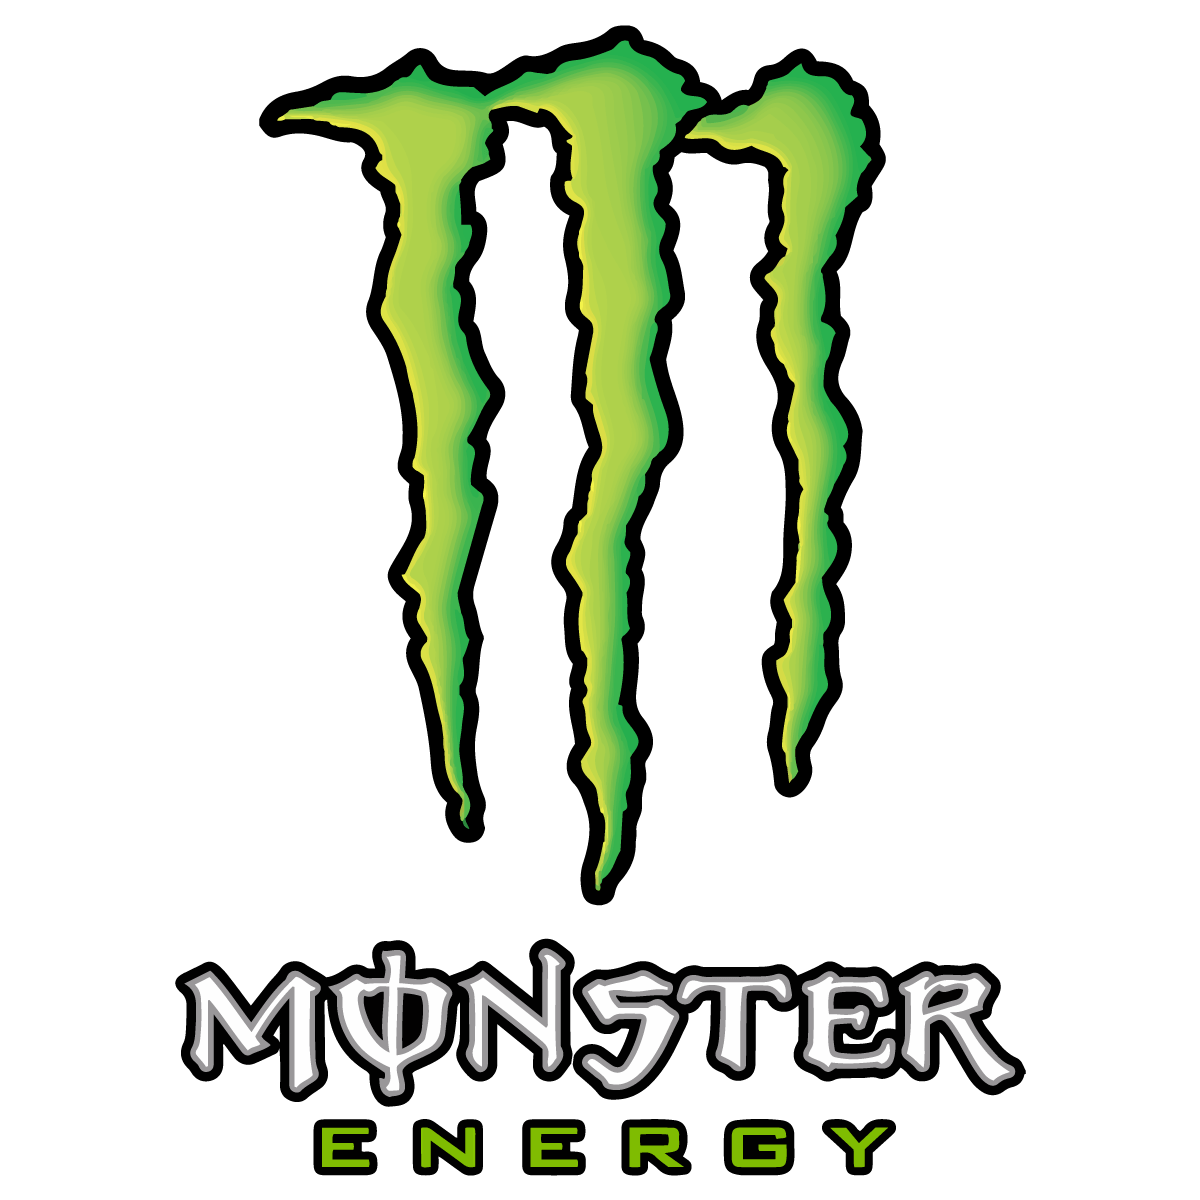 Monster Energy Logo - Monster Energy Logo Vector Transparent Vertical | Free Vector ...